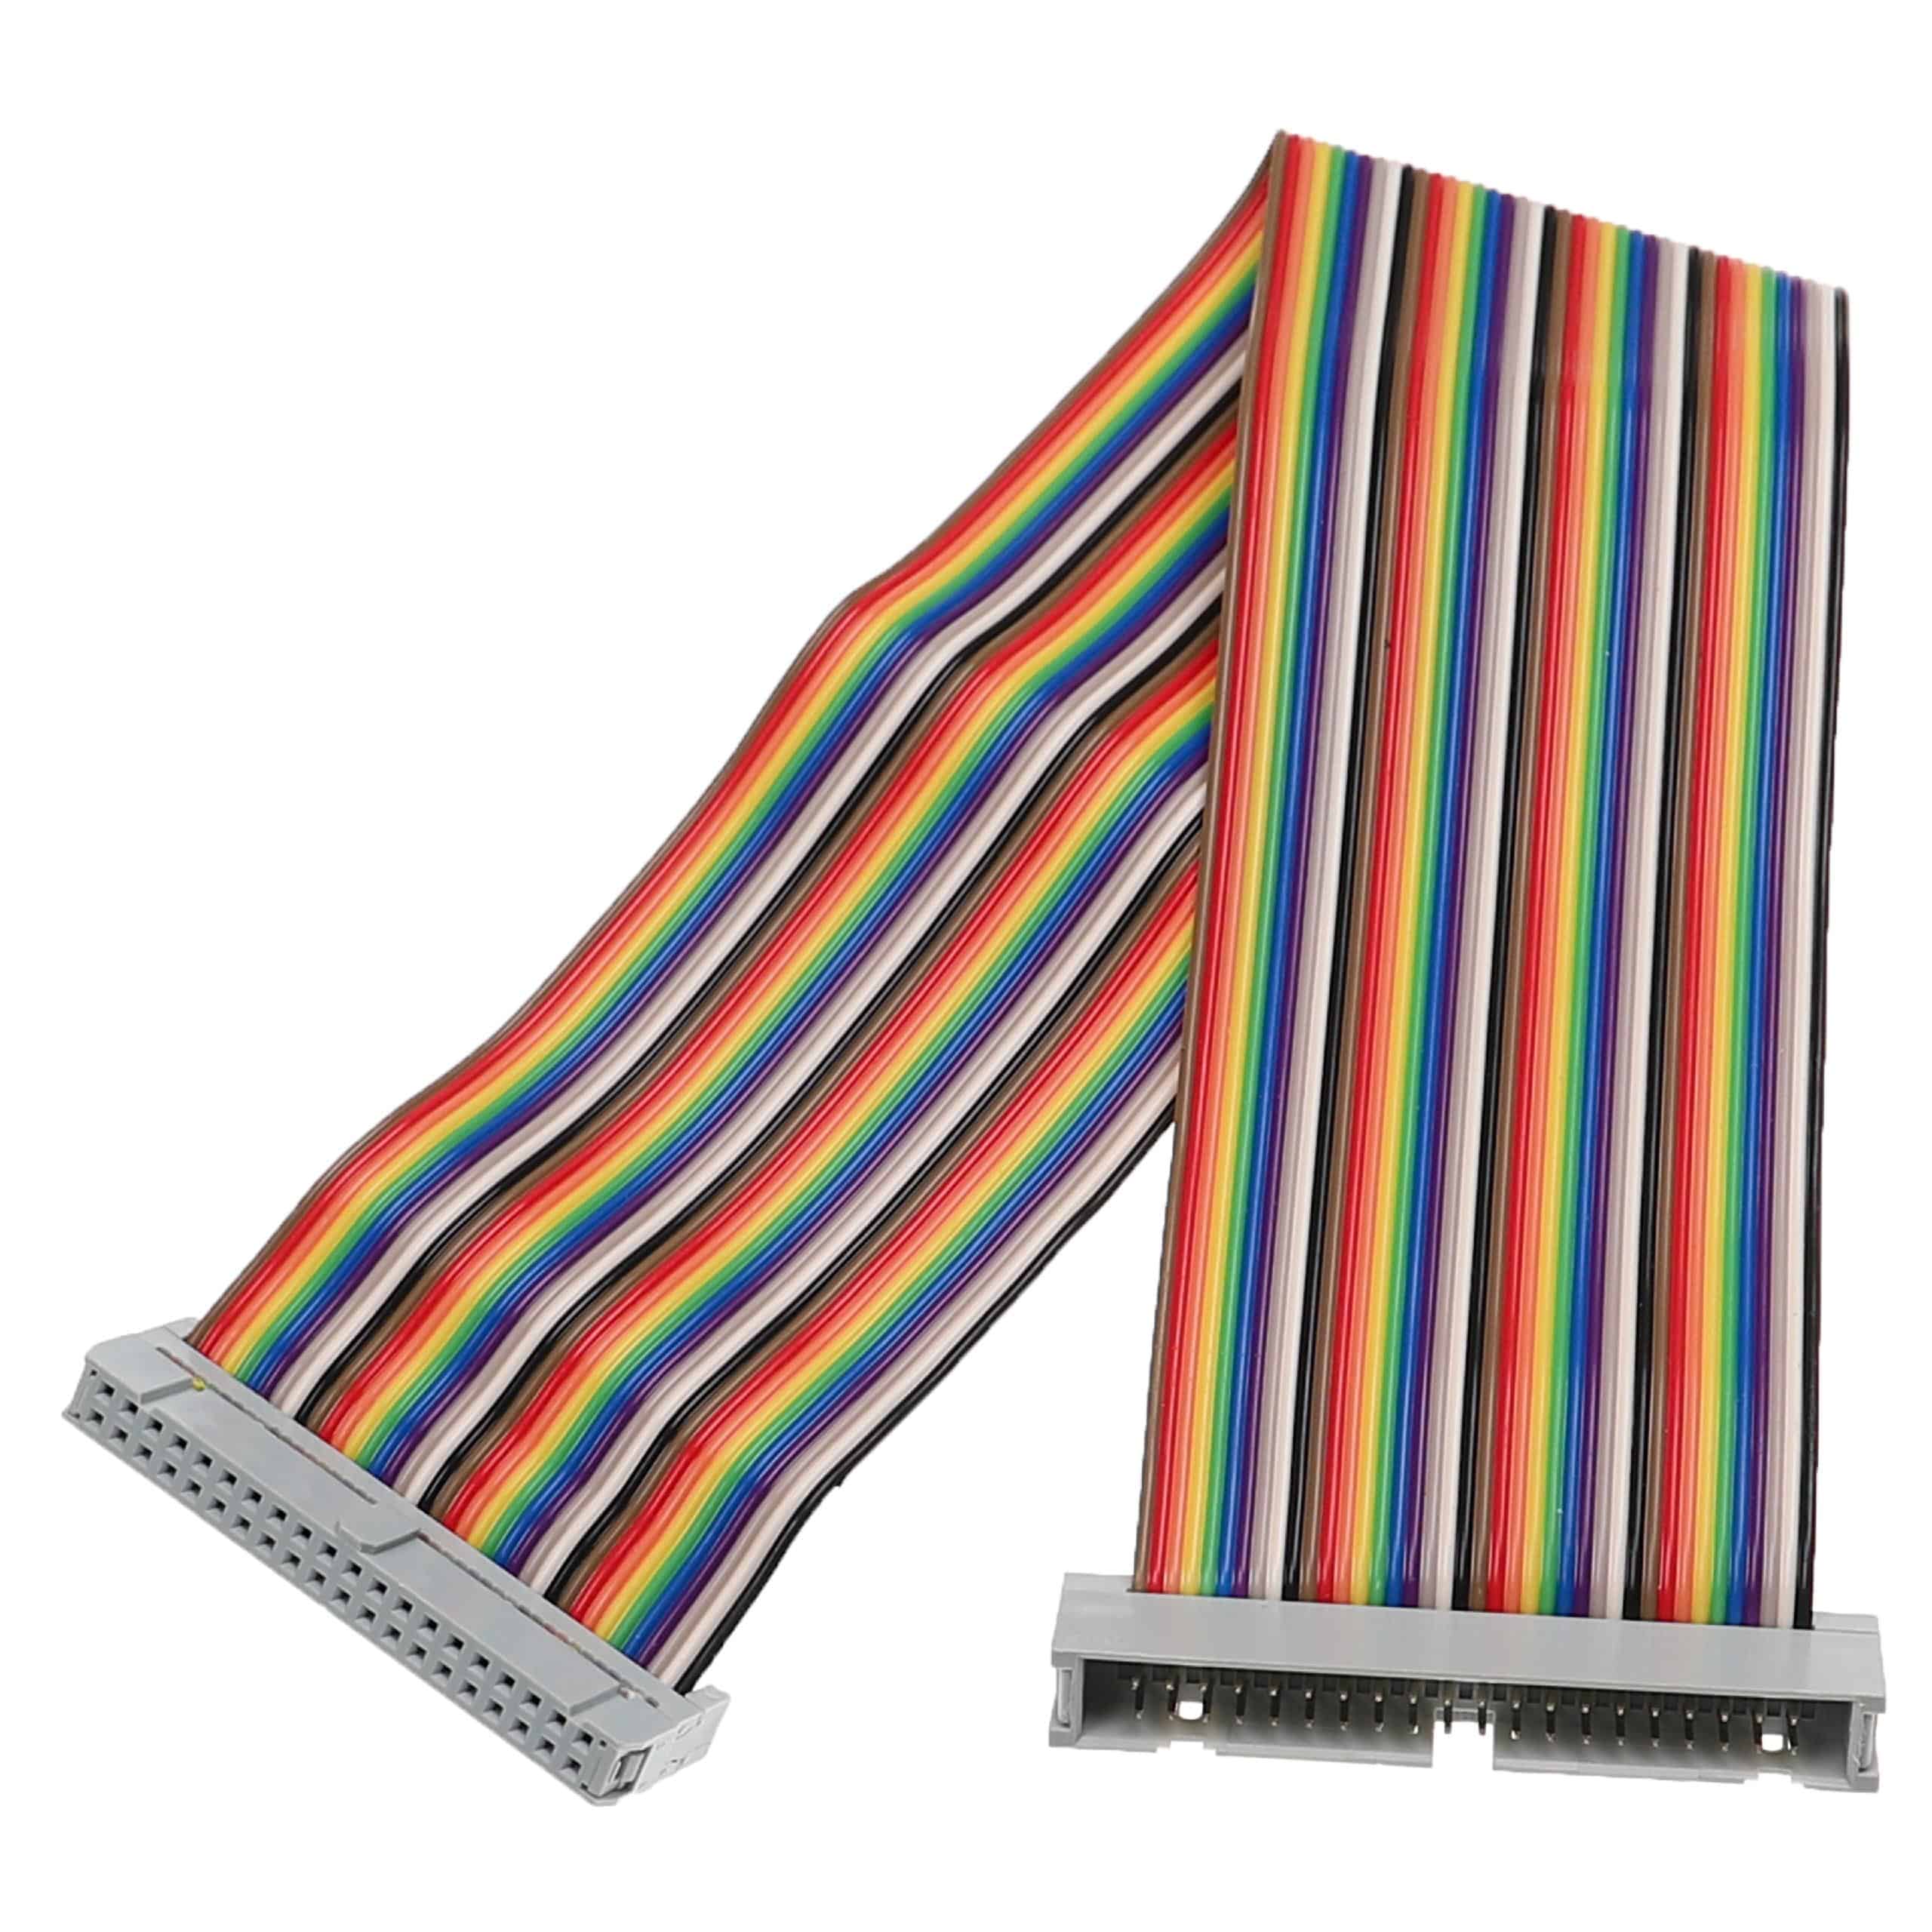 GPIO Cable 40 Pin suitable for Raspberry Pi Mini Computer - GPIO Extension Cable, Multi-Coloured, 30 cm